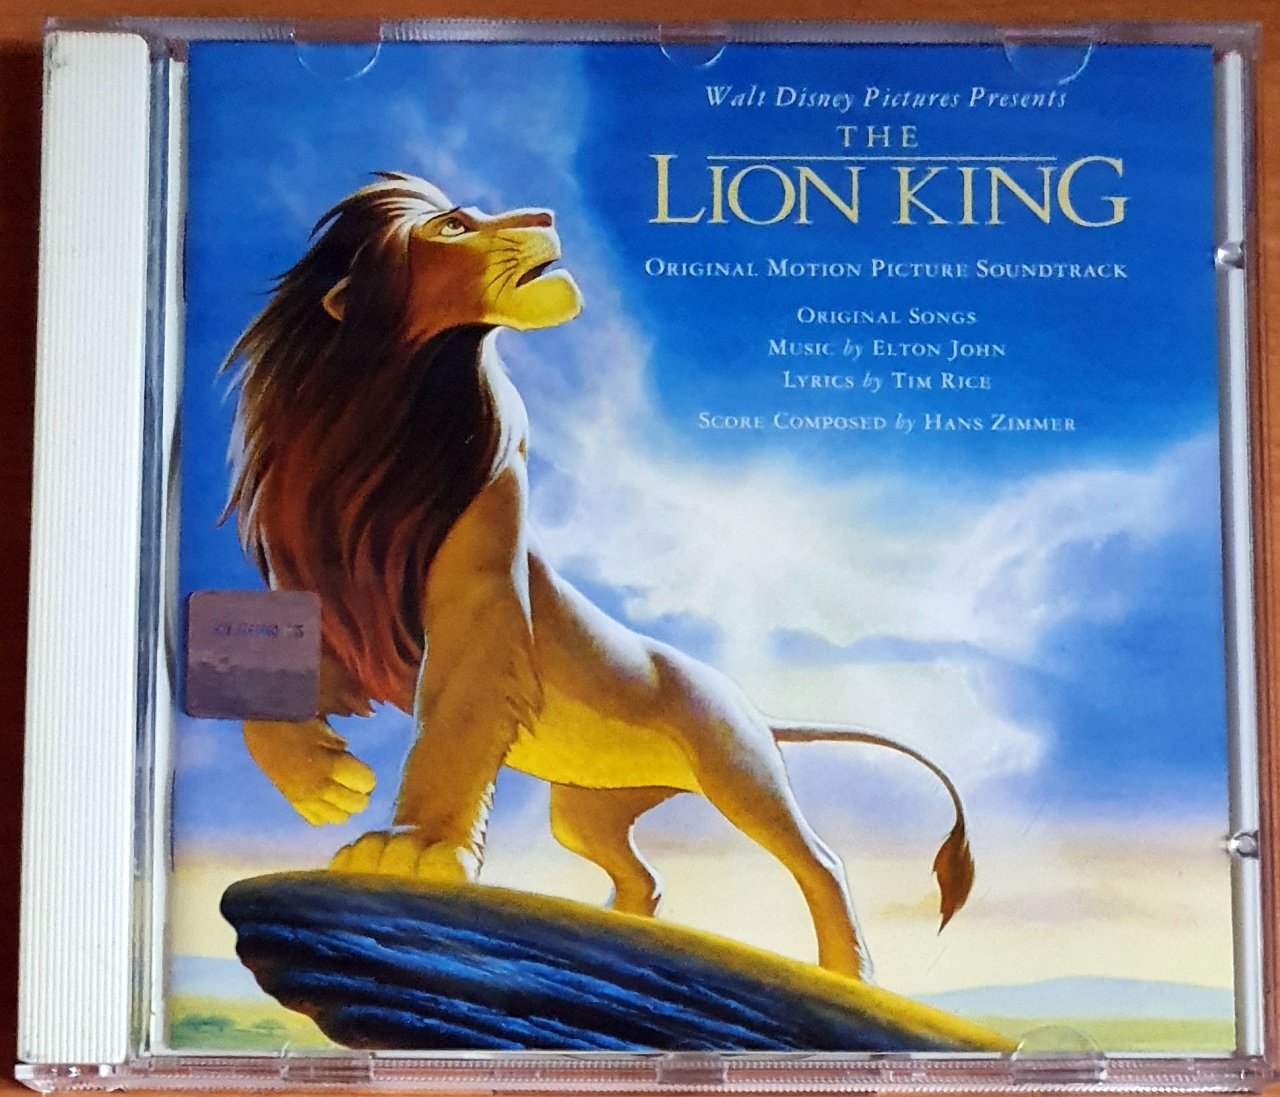 THE LION KING SOUNDTRACK / ELTON JOHN, TIM RICE, HANS ZIMMER (1994) - CD 2.EL